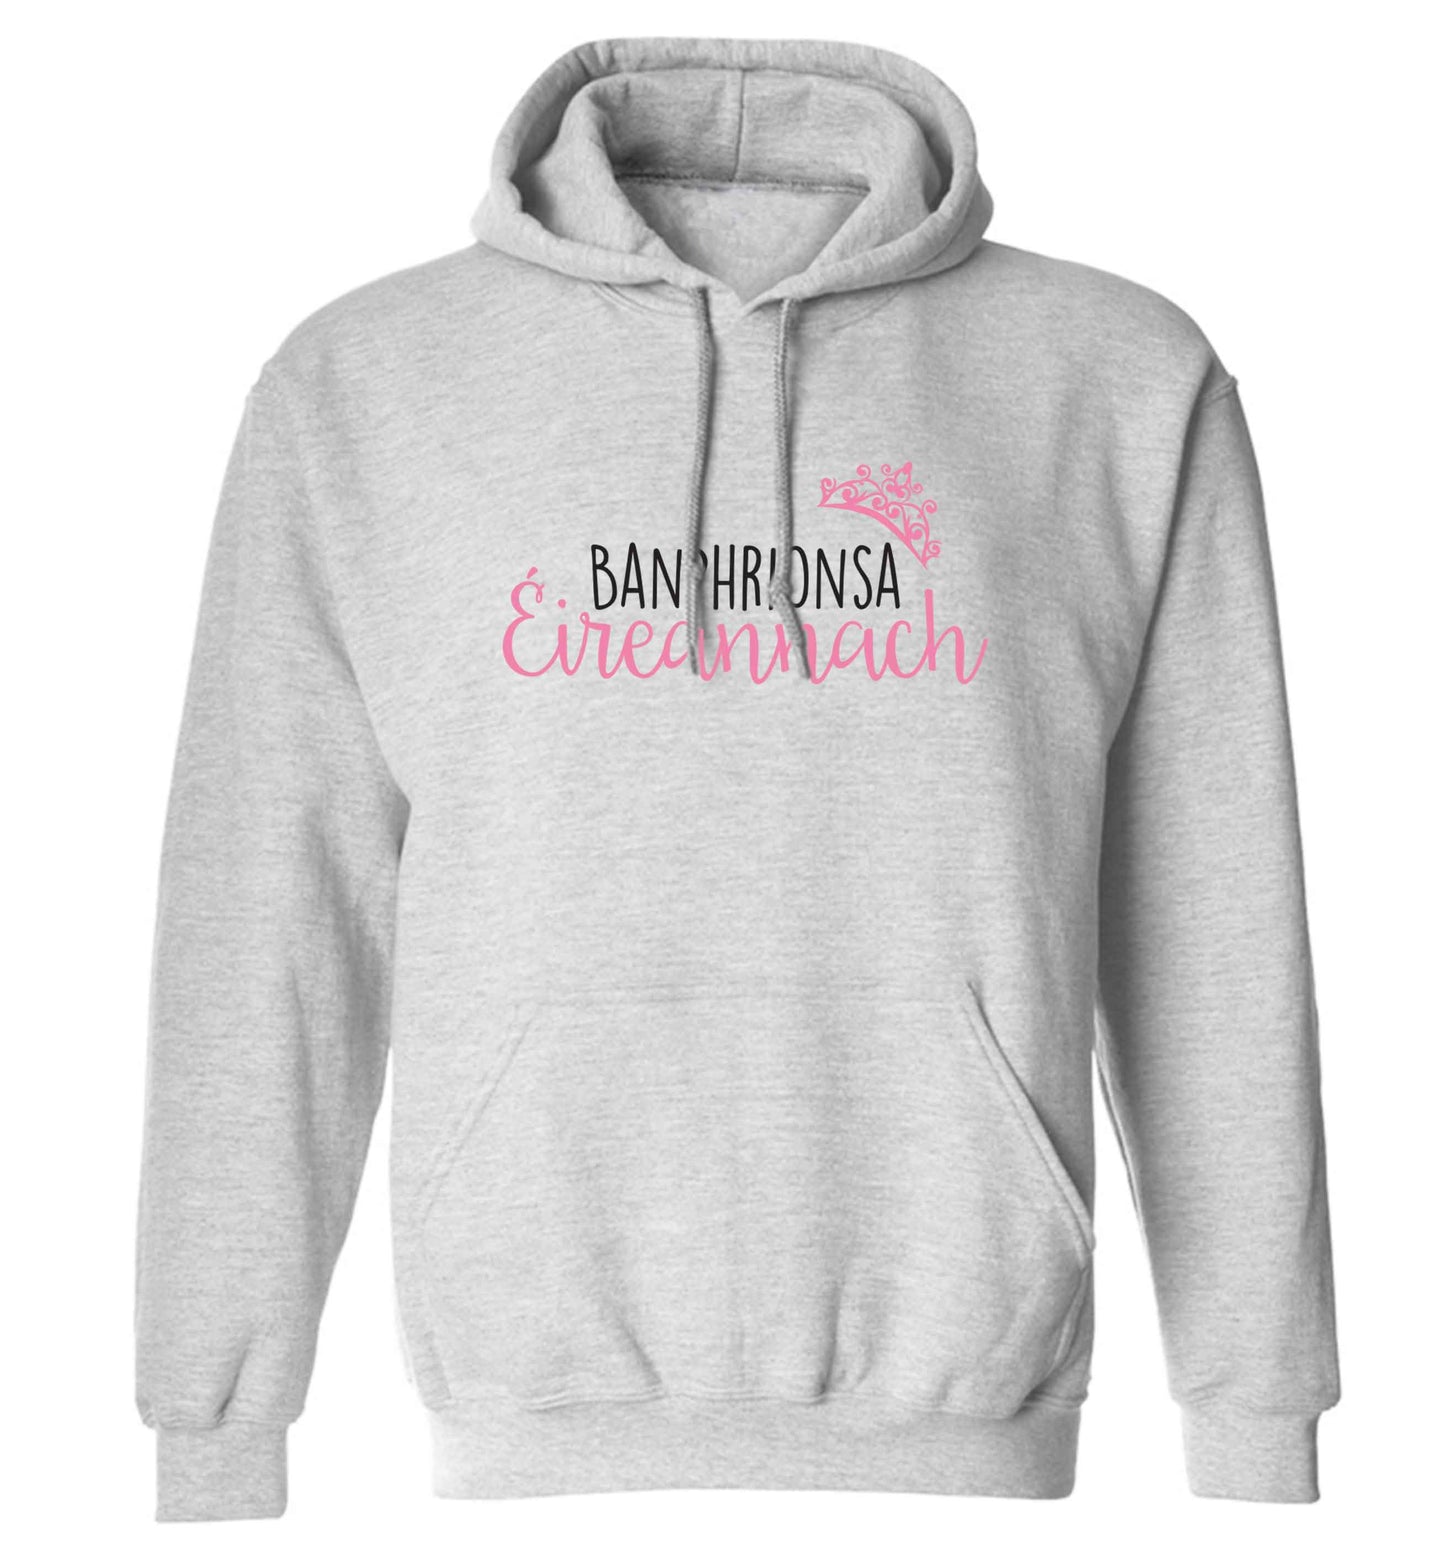 Banphrionsa eireannach adults unisex grey hoodie 2XL